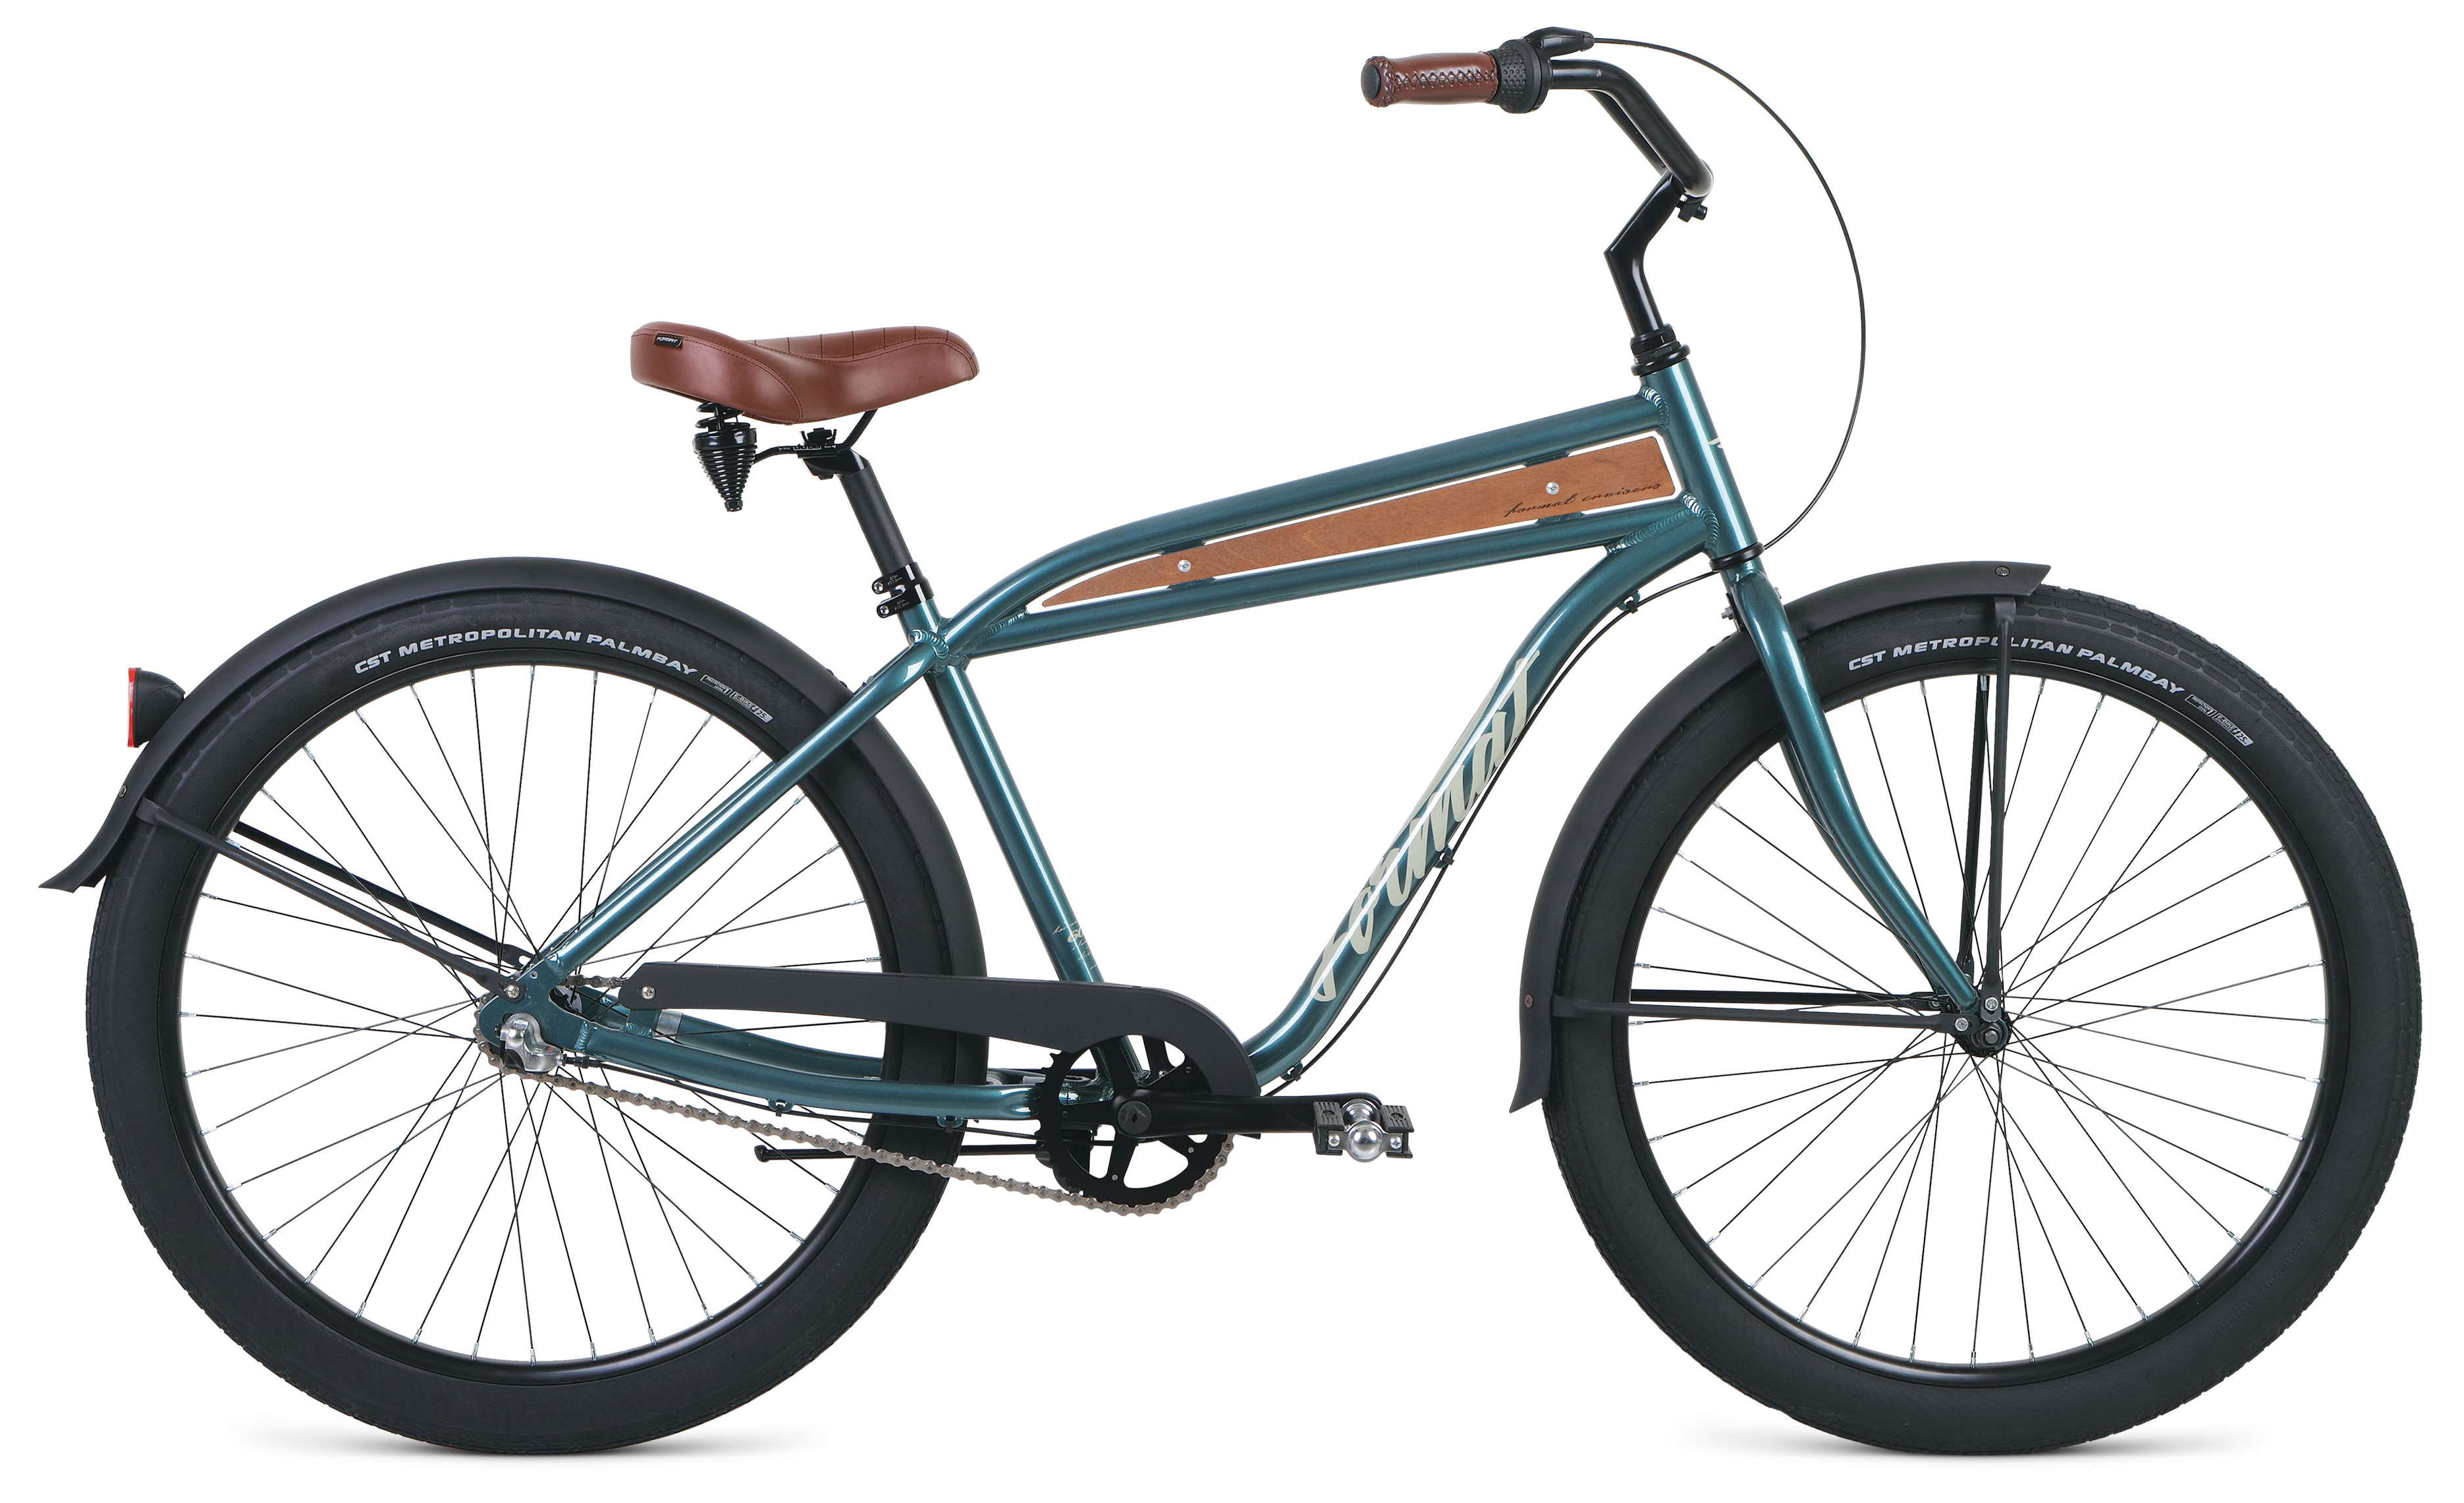  Отзывы о Велосипеде круизере Format 5512 2020